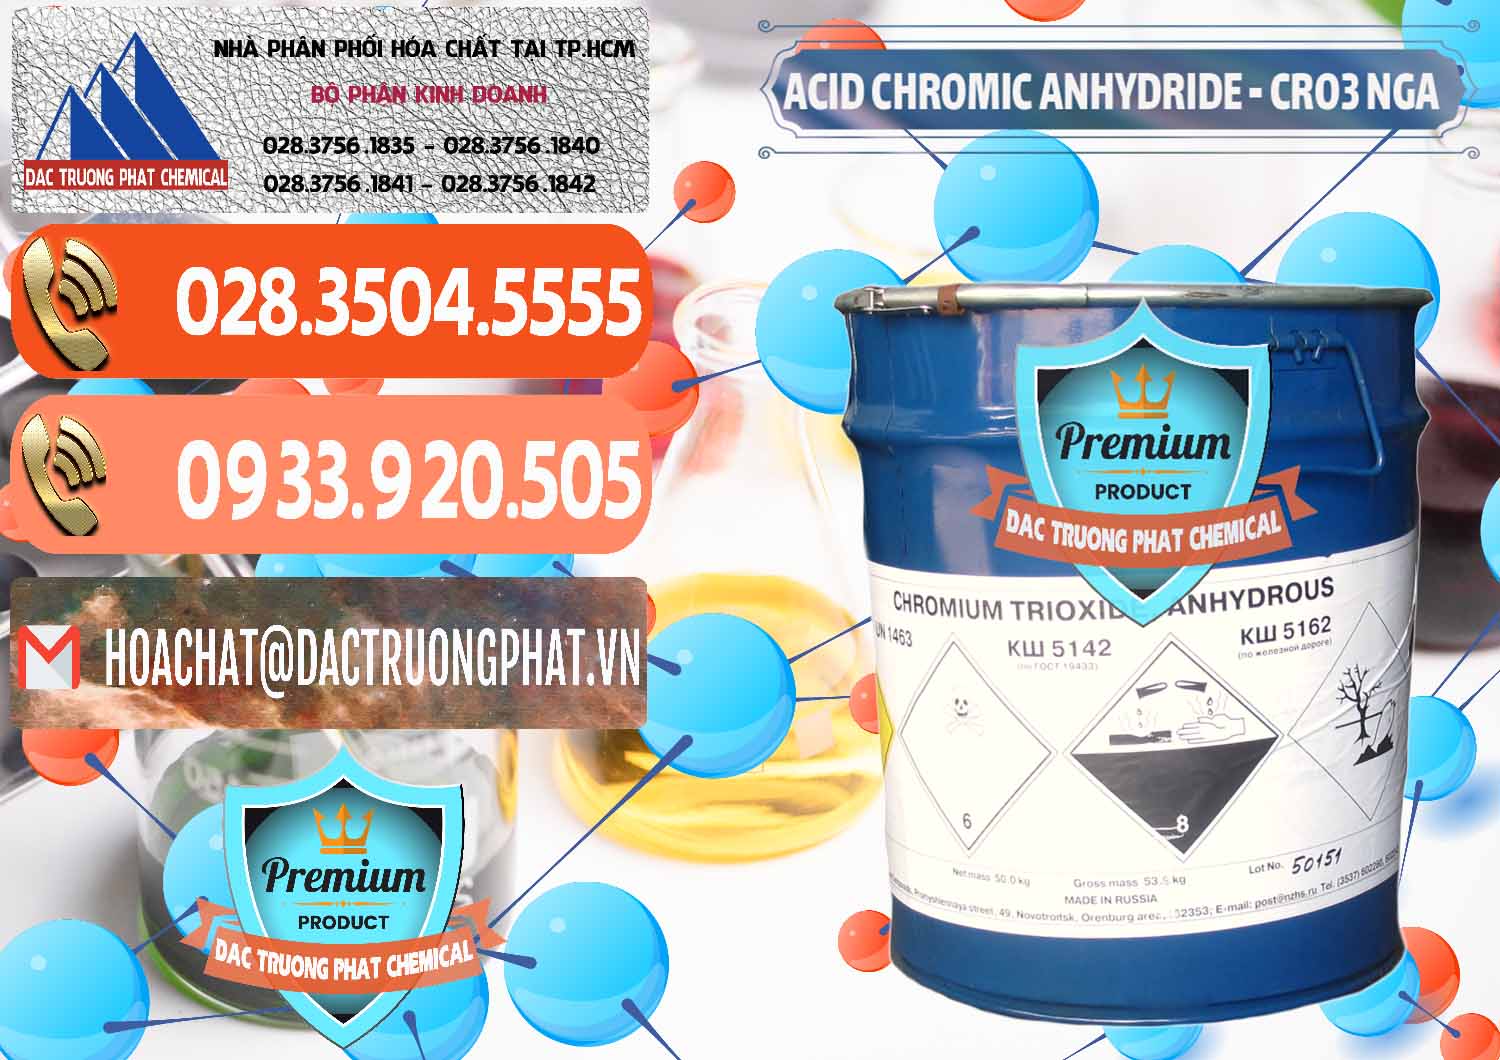 Nhà nhập khẩu - bán Acid Chromic Anhydride - Cromic CRO3 Nga Russia - 0006 - Chuyên phân phối - nhập khẩu hóa chất tại TP.HCM - hoachatmientay.com